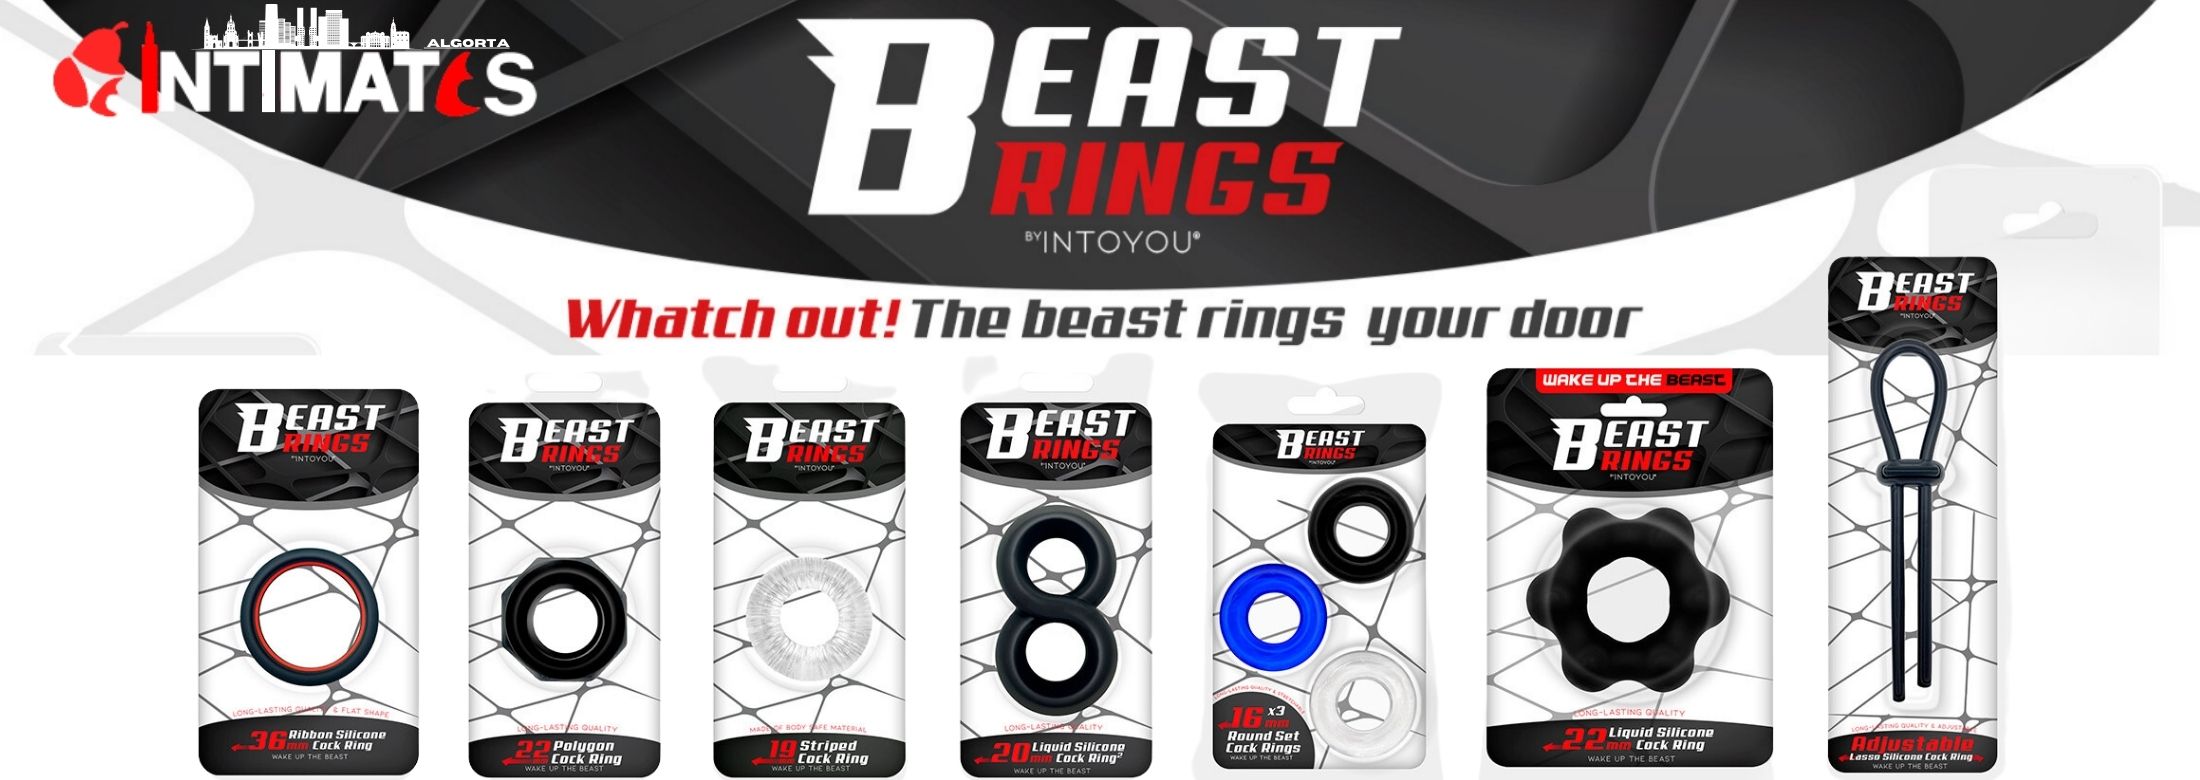 Beast Rings, una marca creada por expertos para el hombre moderno. En Beast Rings encontrarás anillos para el pene de alta calidad, que puedes adquirir en intimates.es "Tu Personal Shopper Erótico"